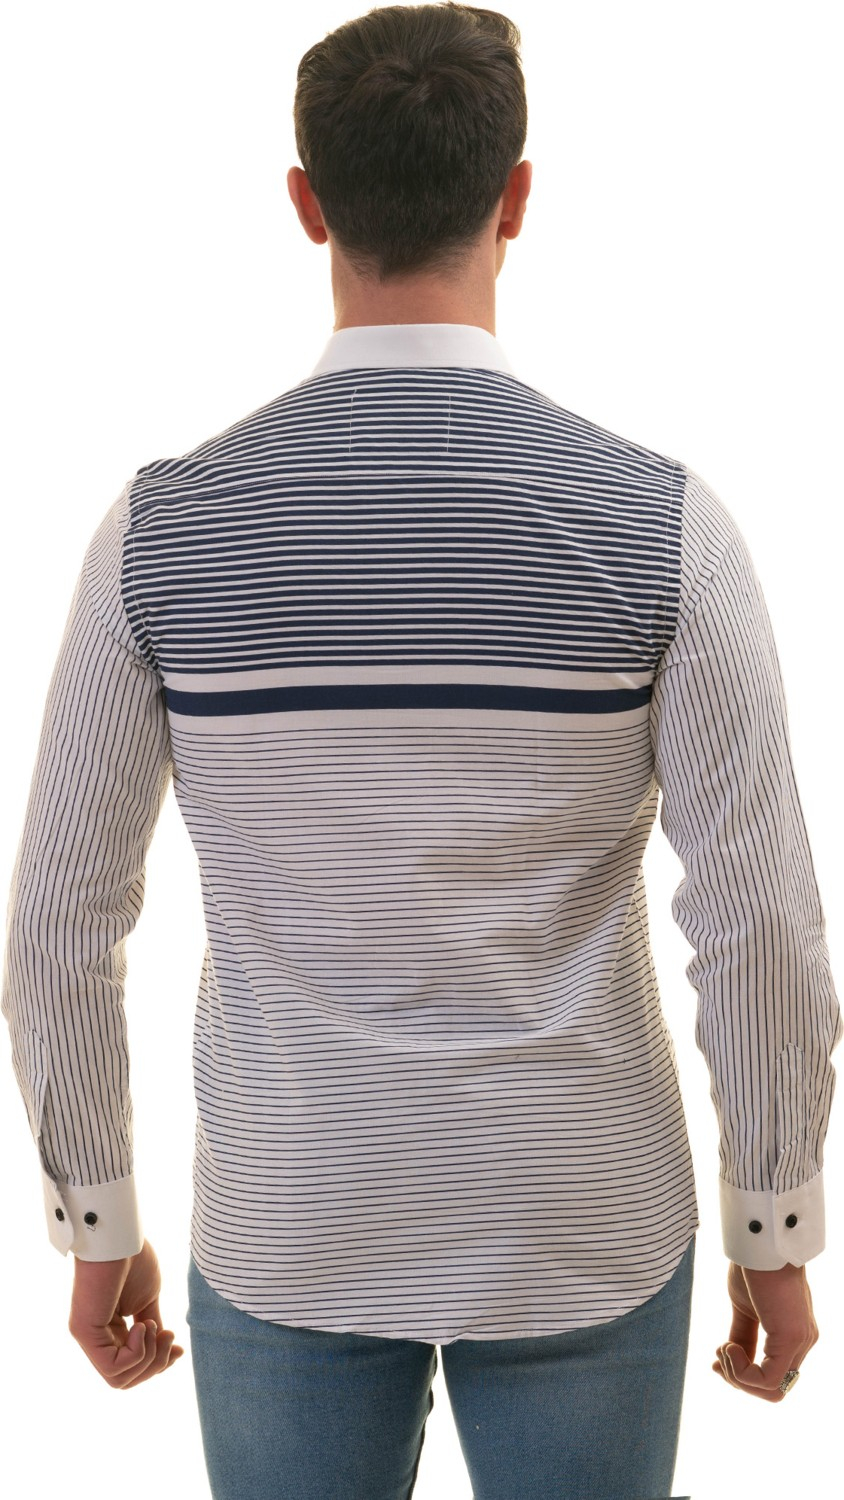 Эксклюзивная рубашка для мужчин Exve белая с темно-синими полосами на груди, специальный приталенный крой с длинным рукавом.